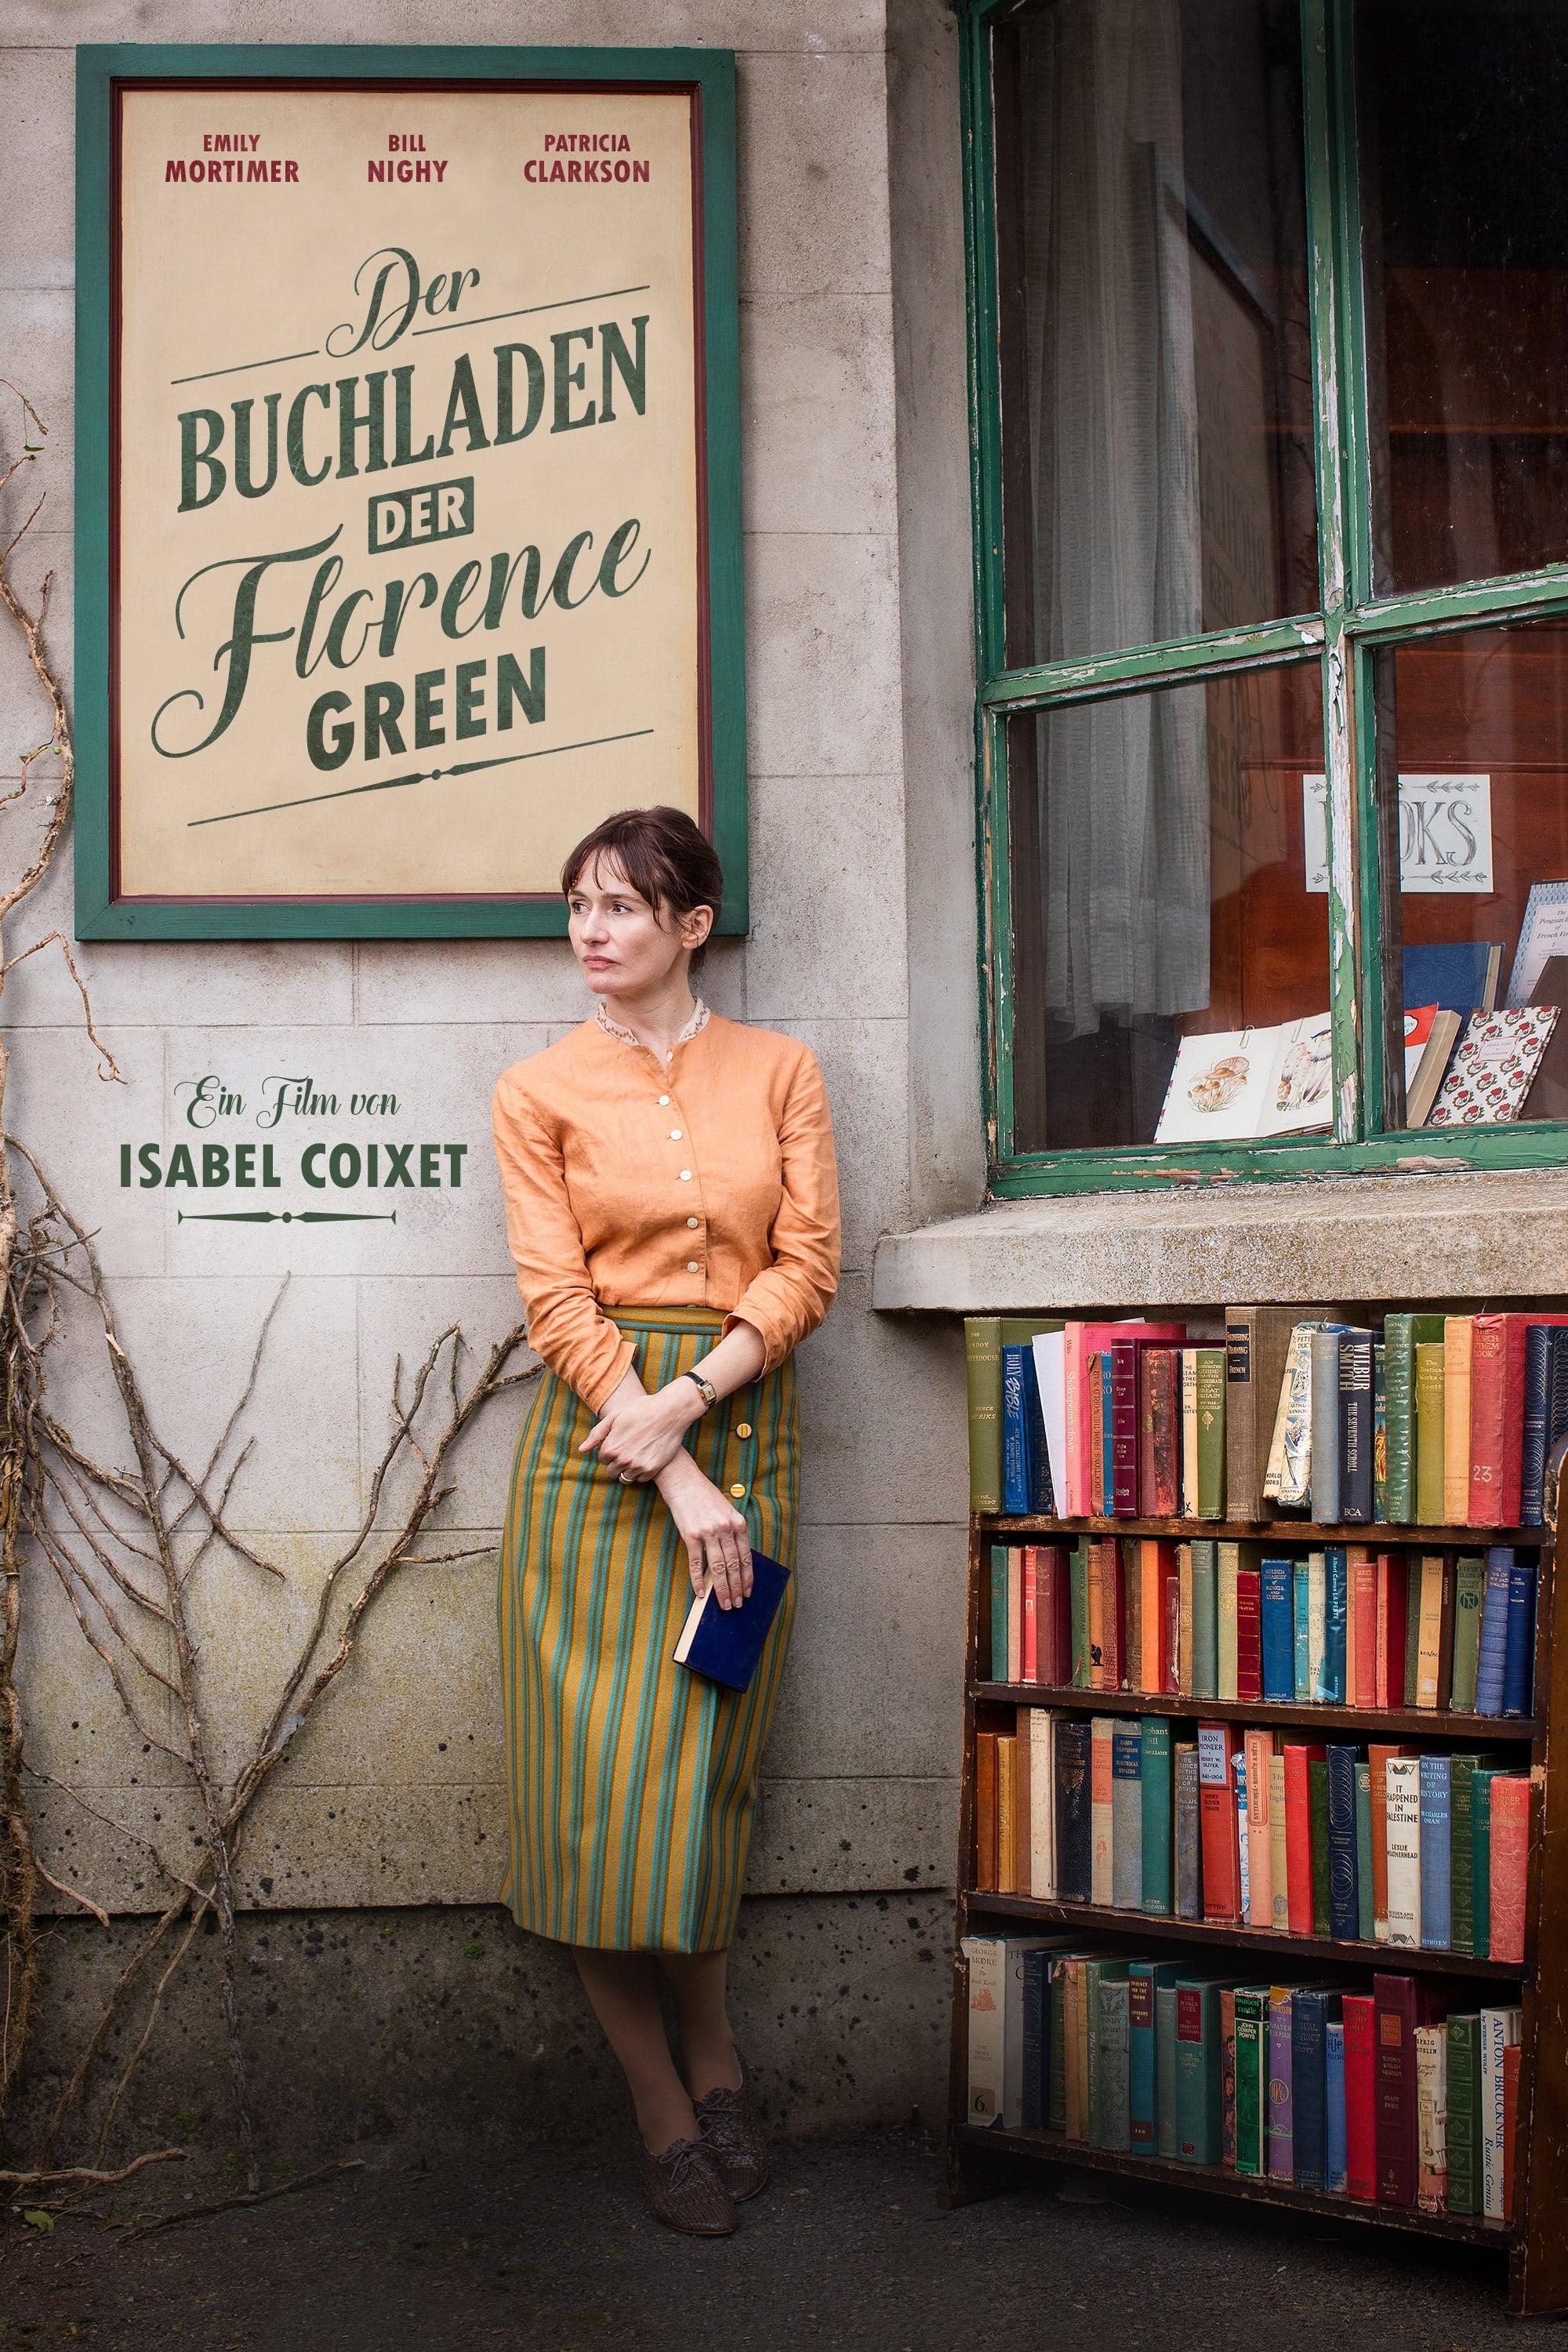 Der Buchladen der Florence Green poster